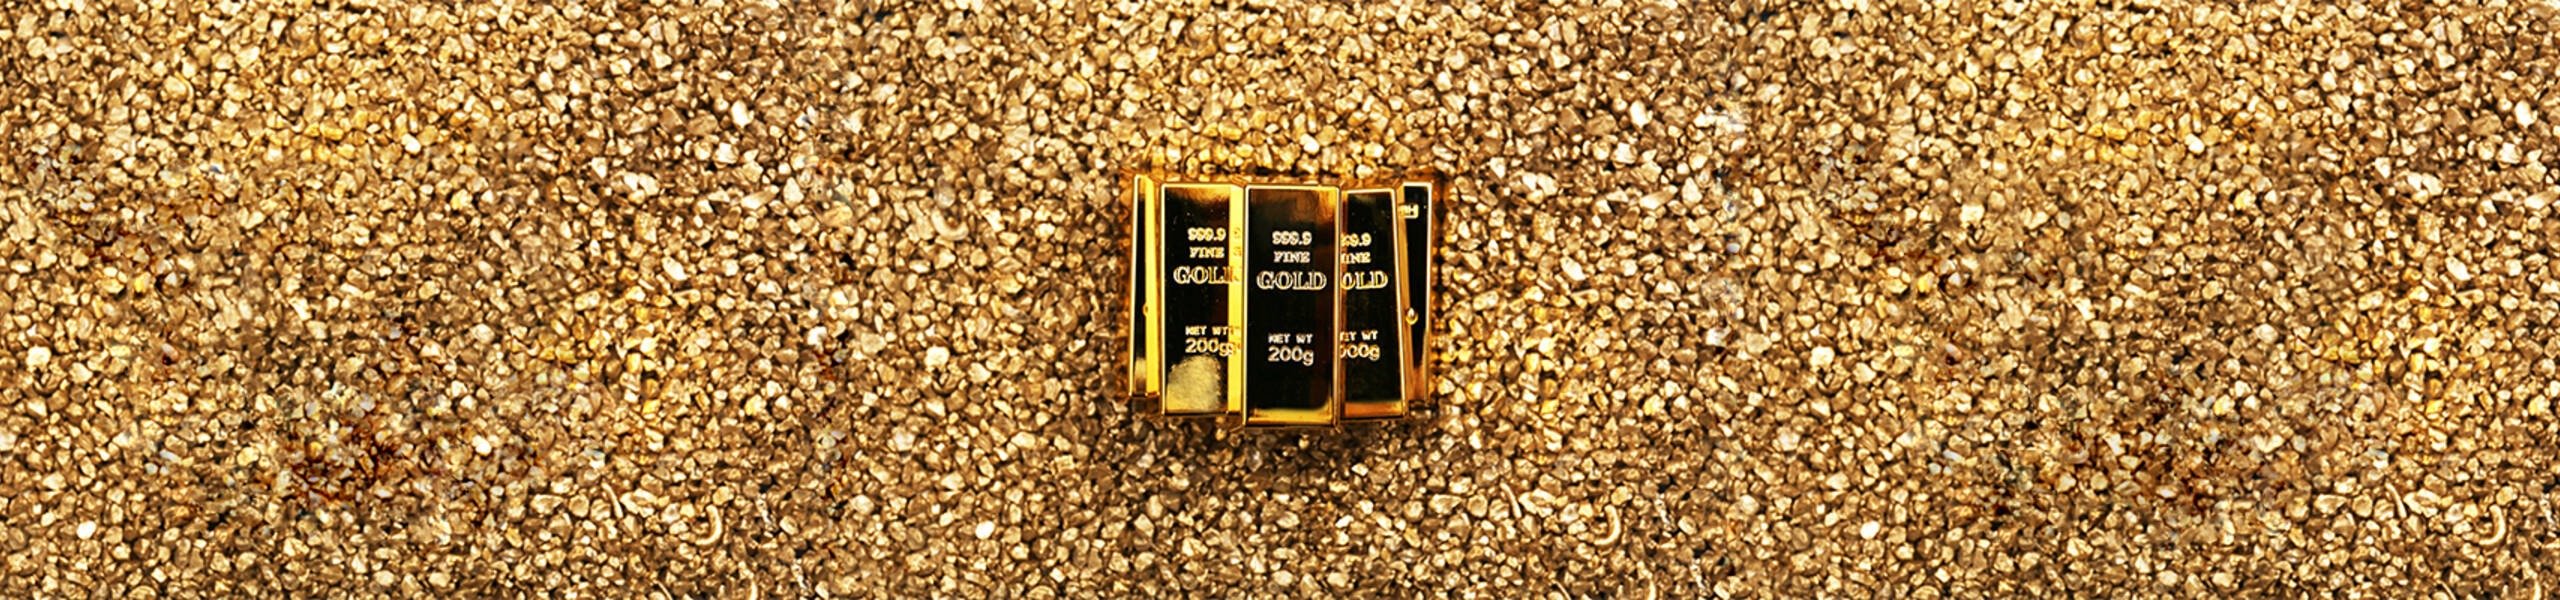 El precio del Oro estable con perspectiva Bajista